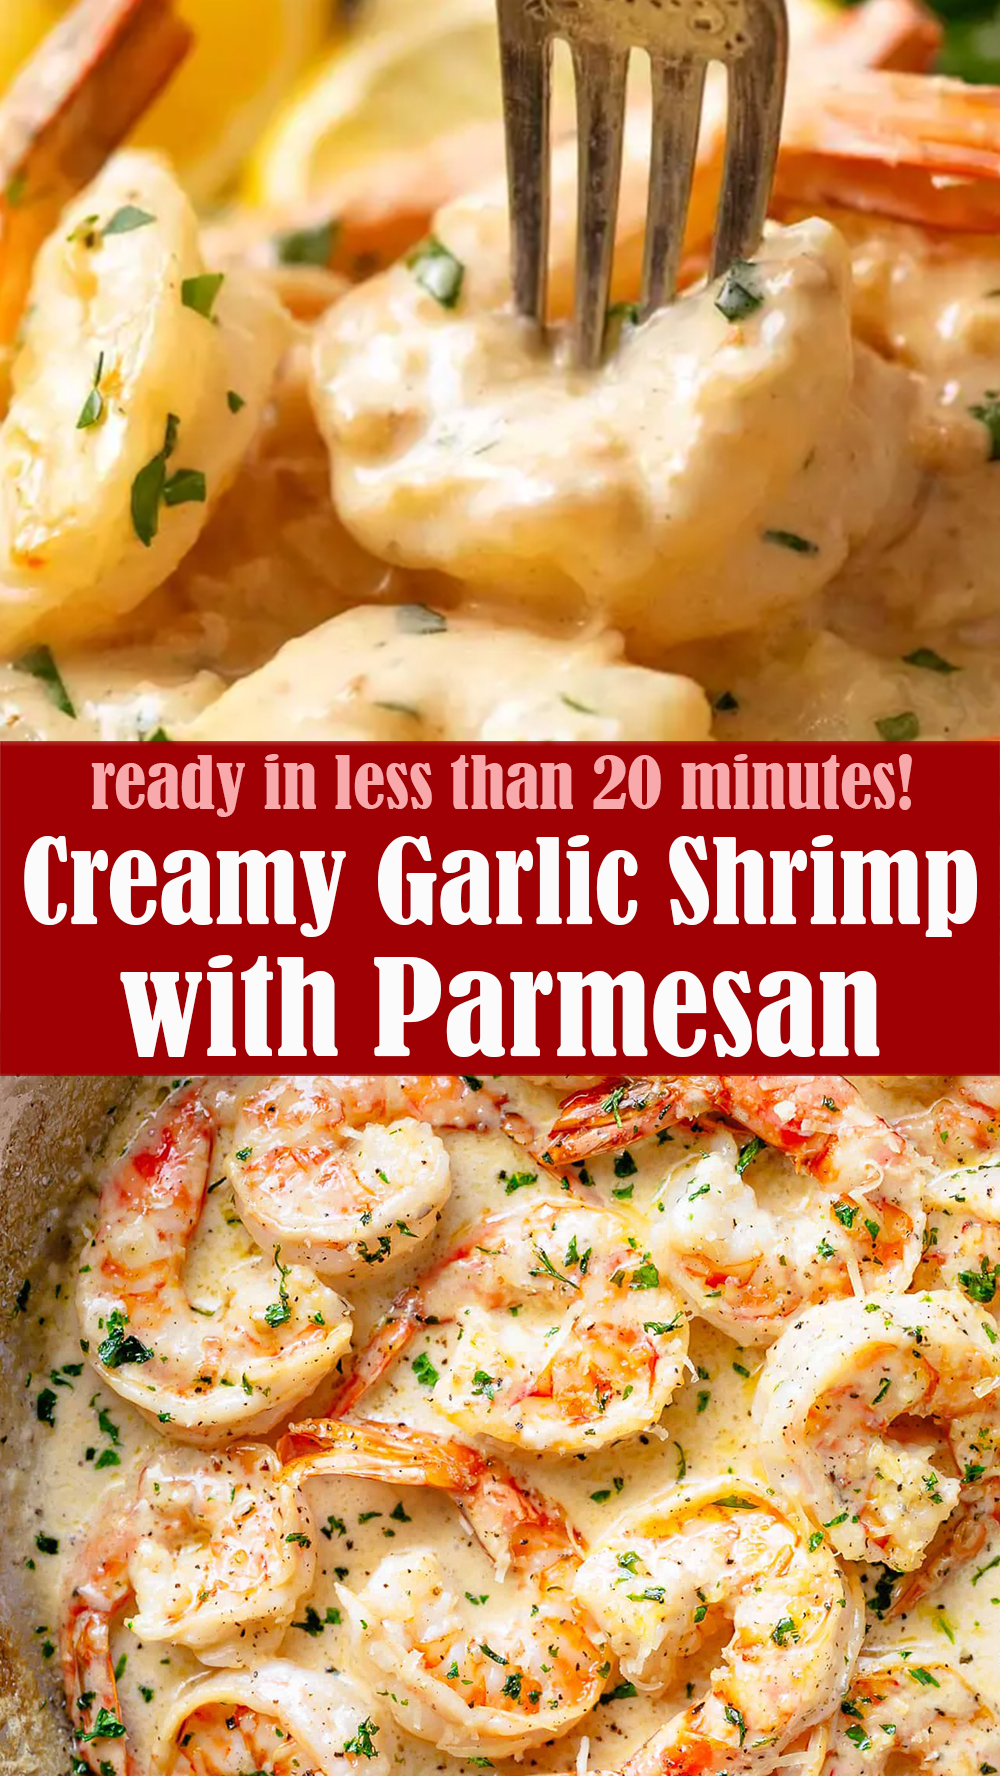 Easy Creamy Garlic Shrimp with Parmesan